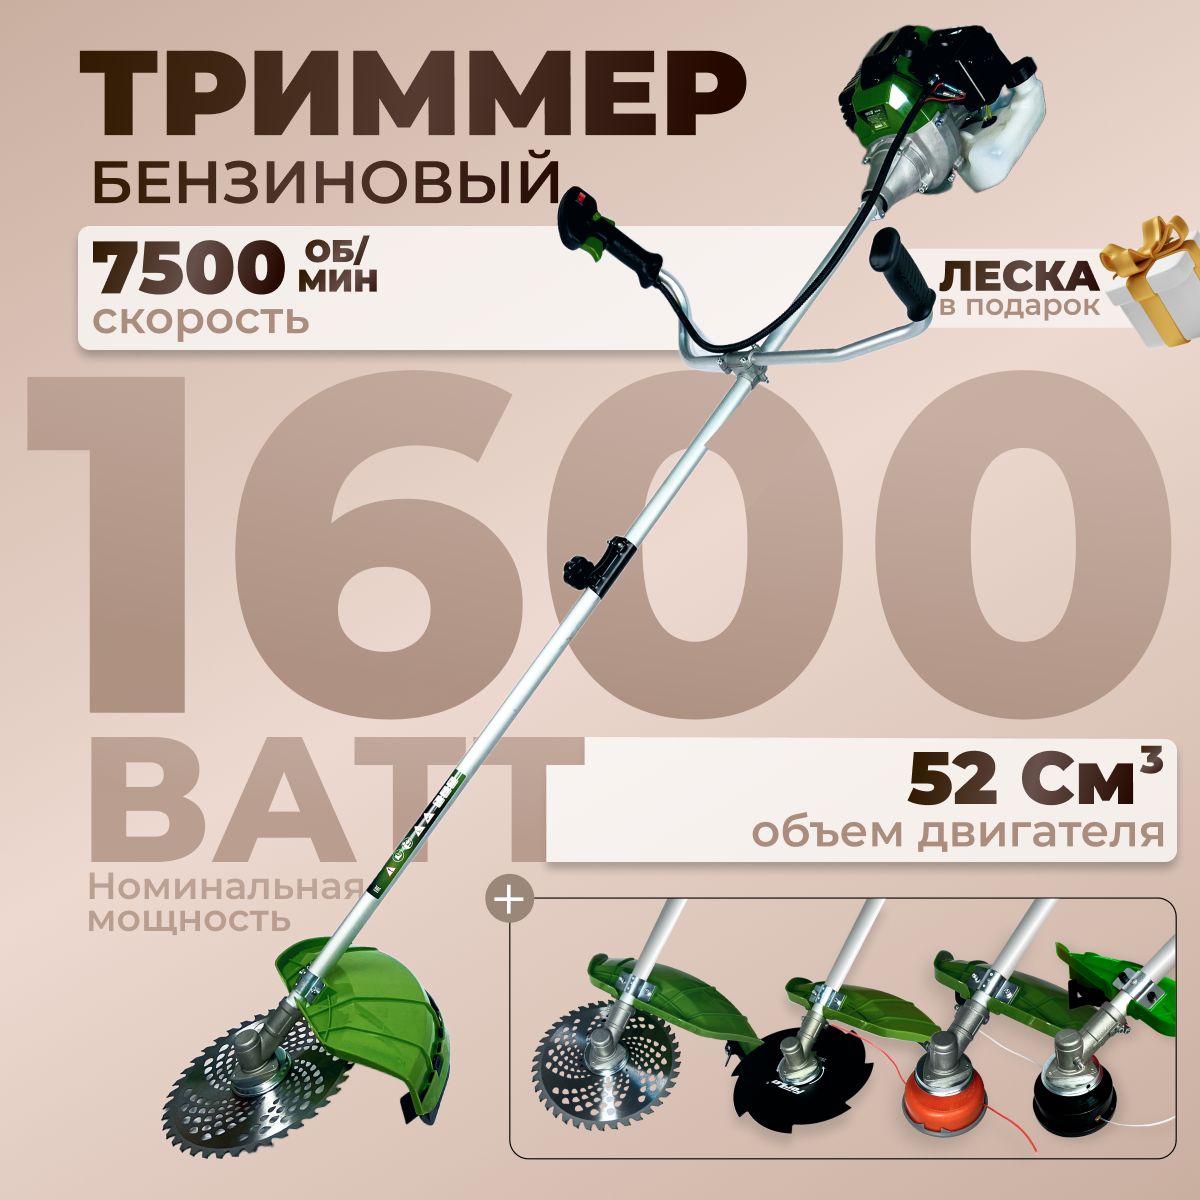 ТриммербензиновыйдлятравыECO-52/1600Вт,7500об/мин,нож40Т,52см